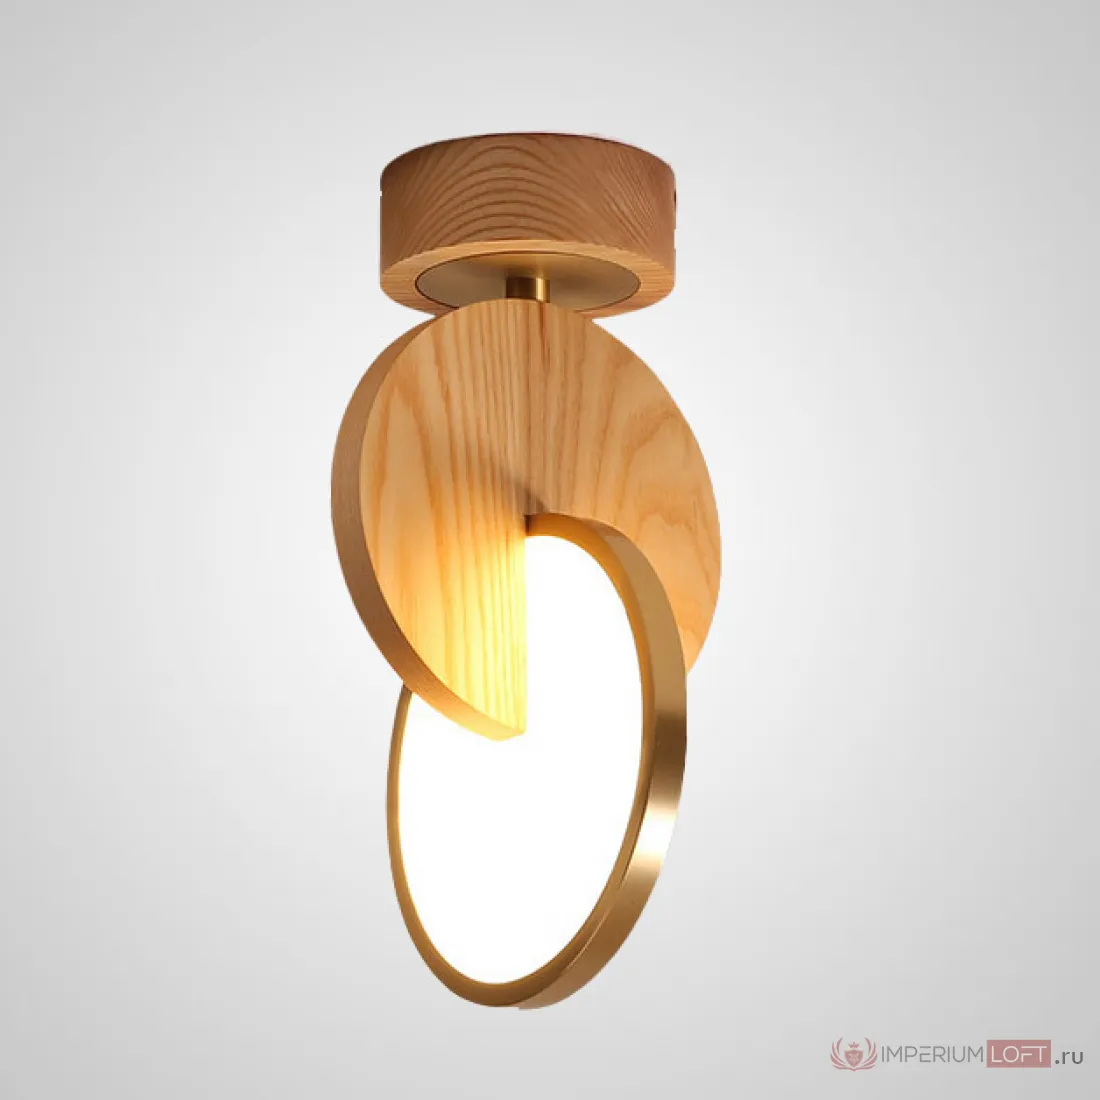 Ch light. Светильник Eclipse Wood. Настенный светильник в форме 2 пересекающихся колец купить.